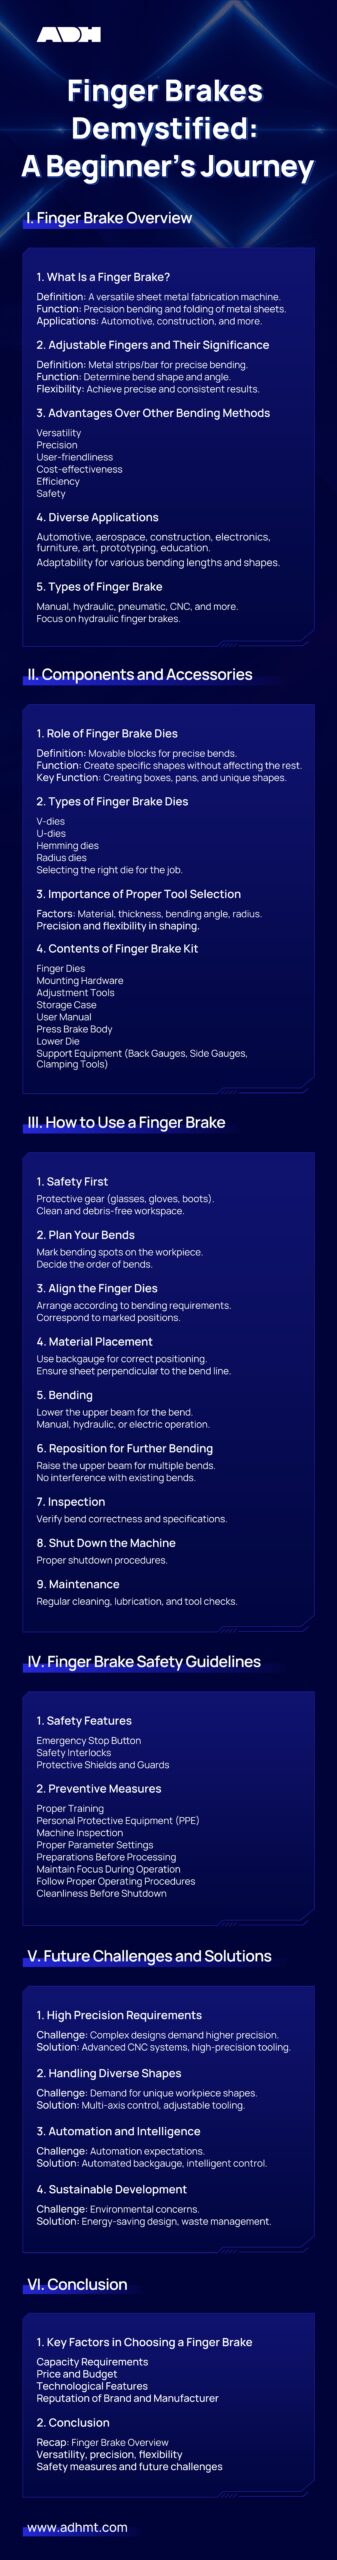 finger brakes